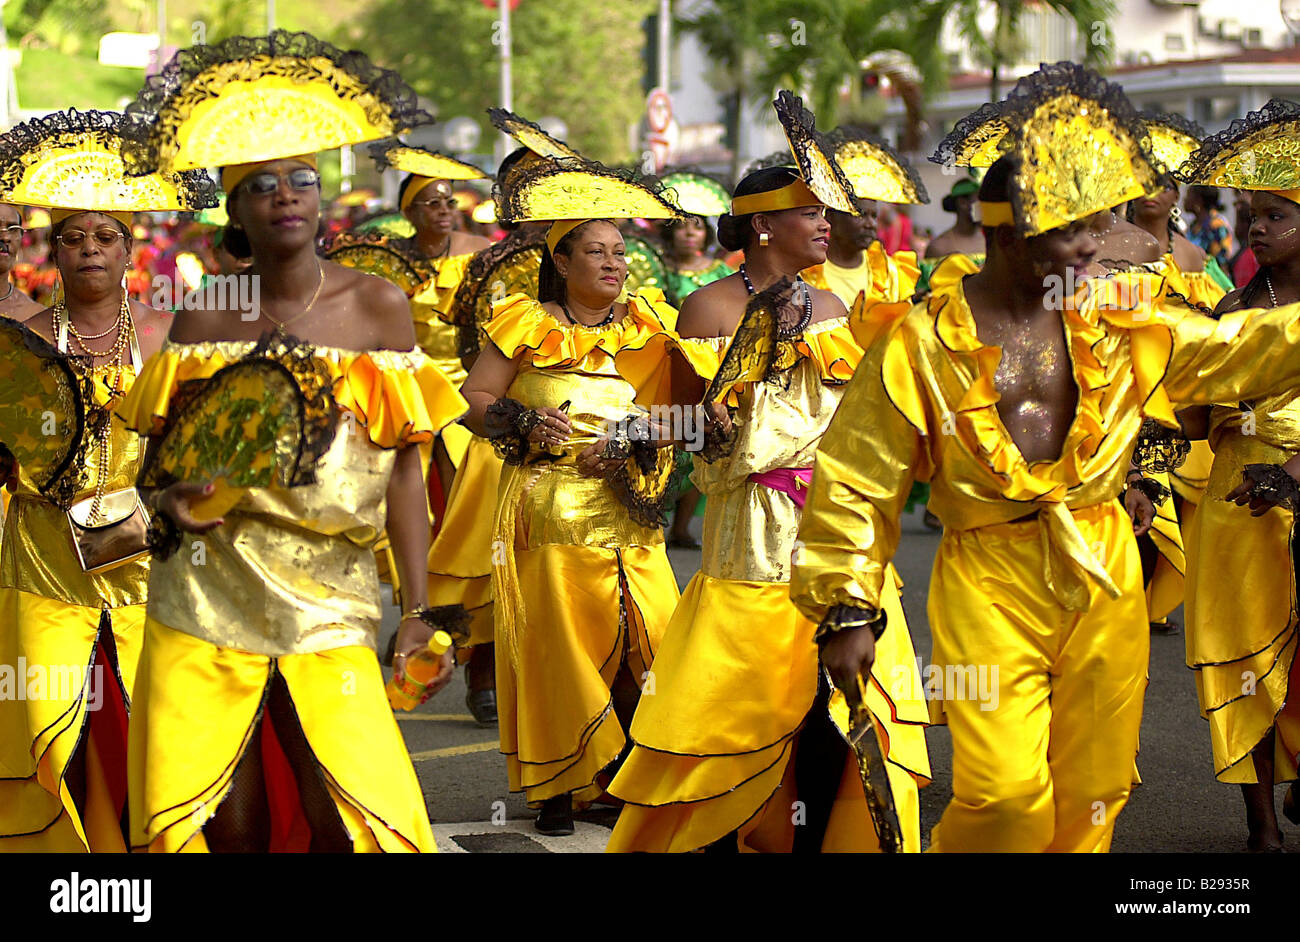 Antilles martinique costume déguisement carnaval Masques personnes scènes  de vie Photo Stock - Alamy